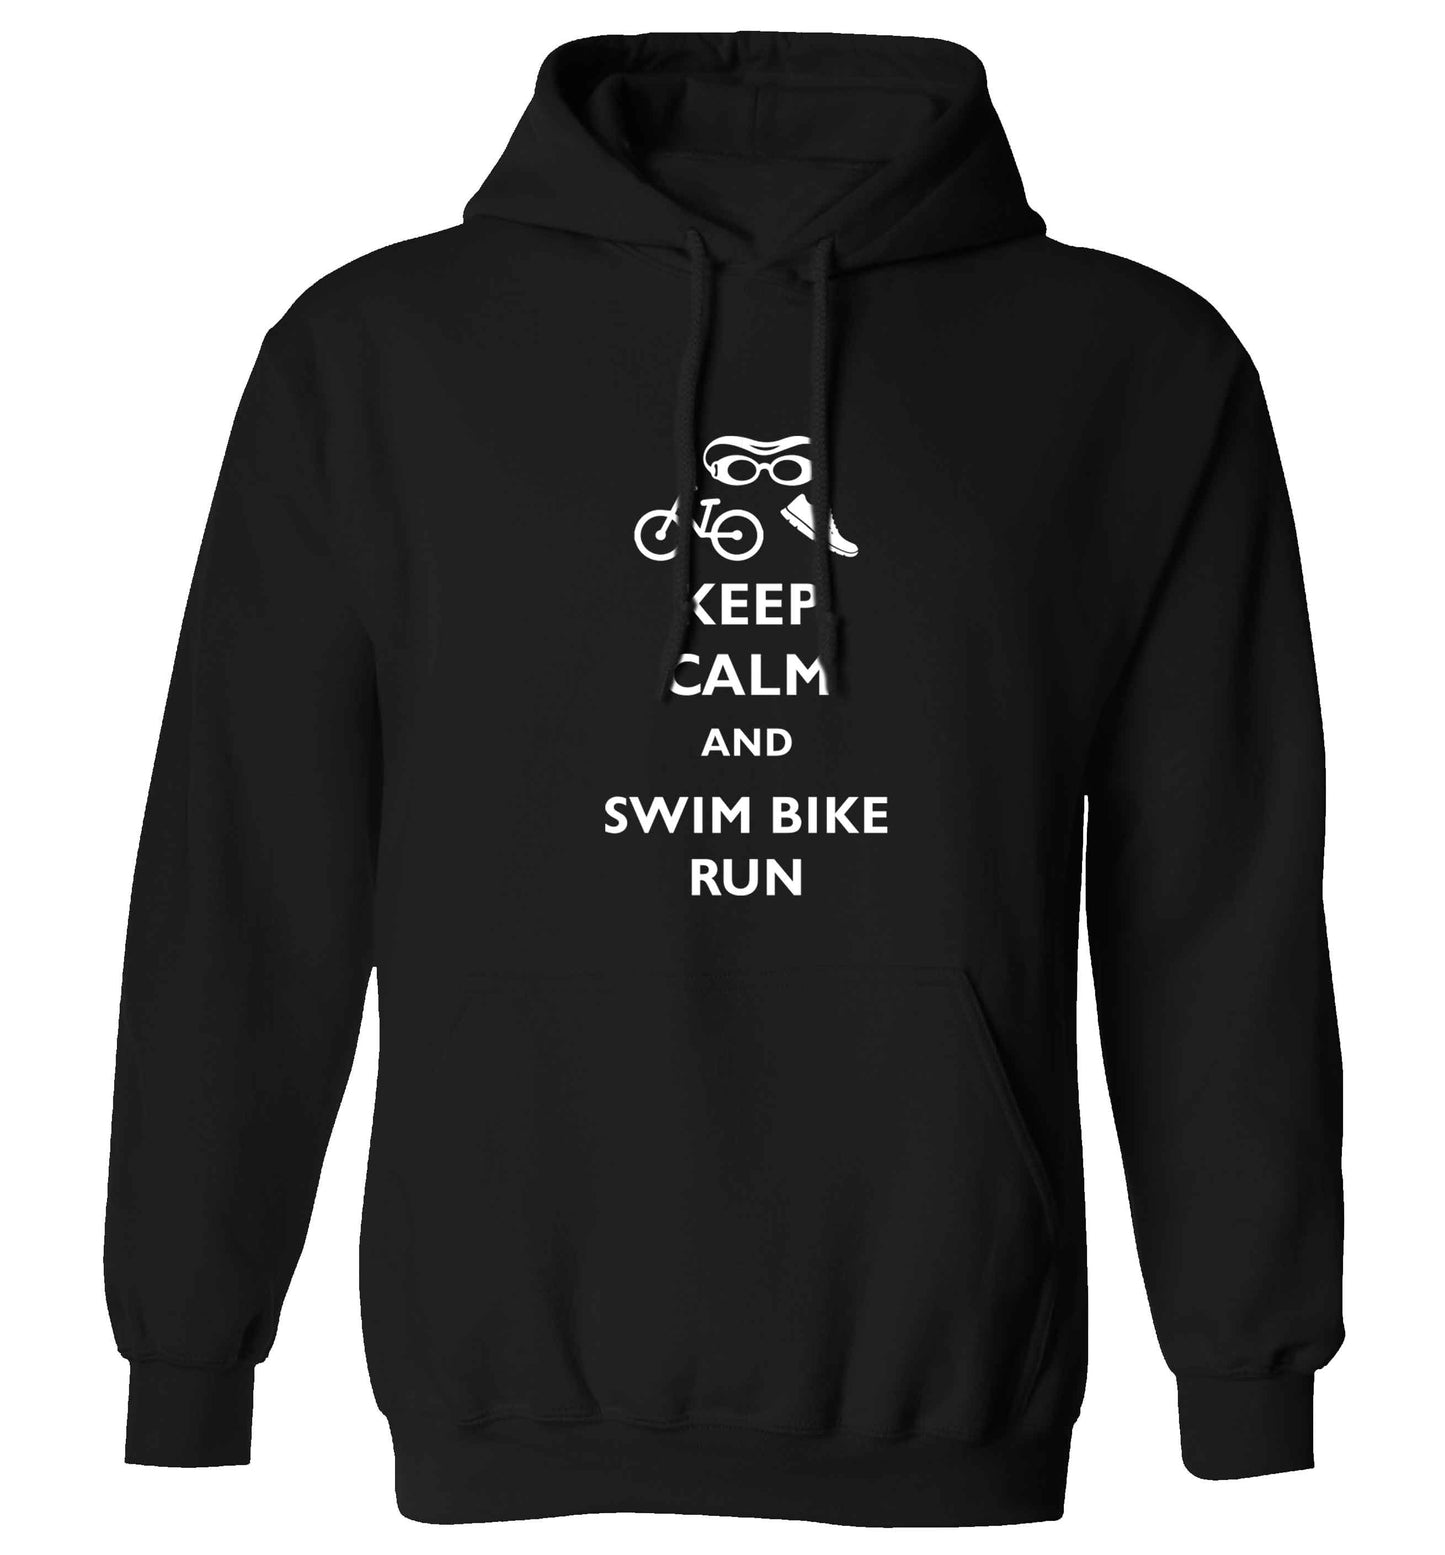 Keep calm and swim bike run adults unisex black hoodie 2XL